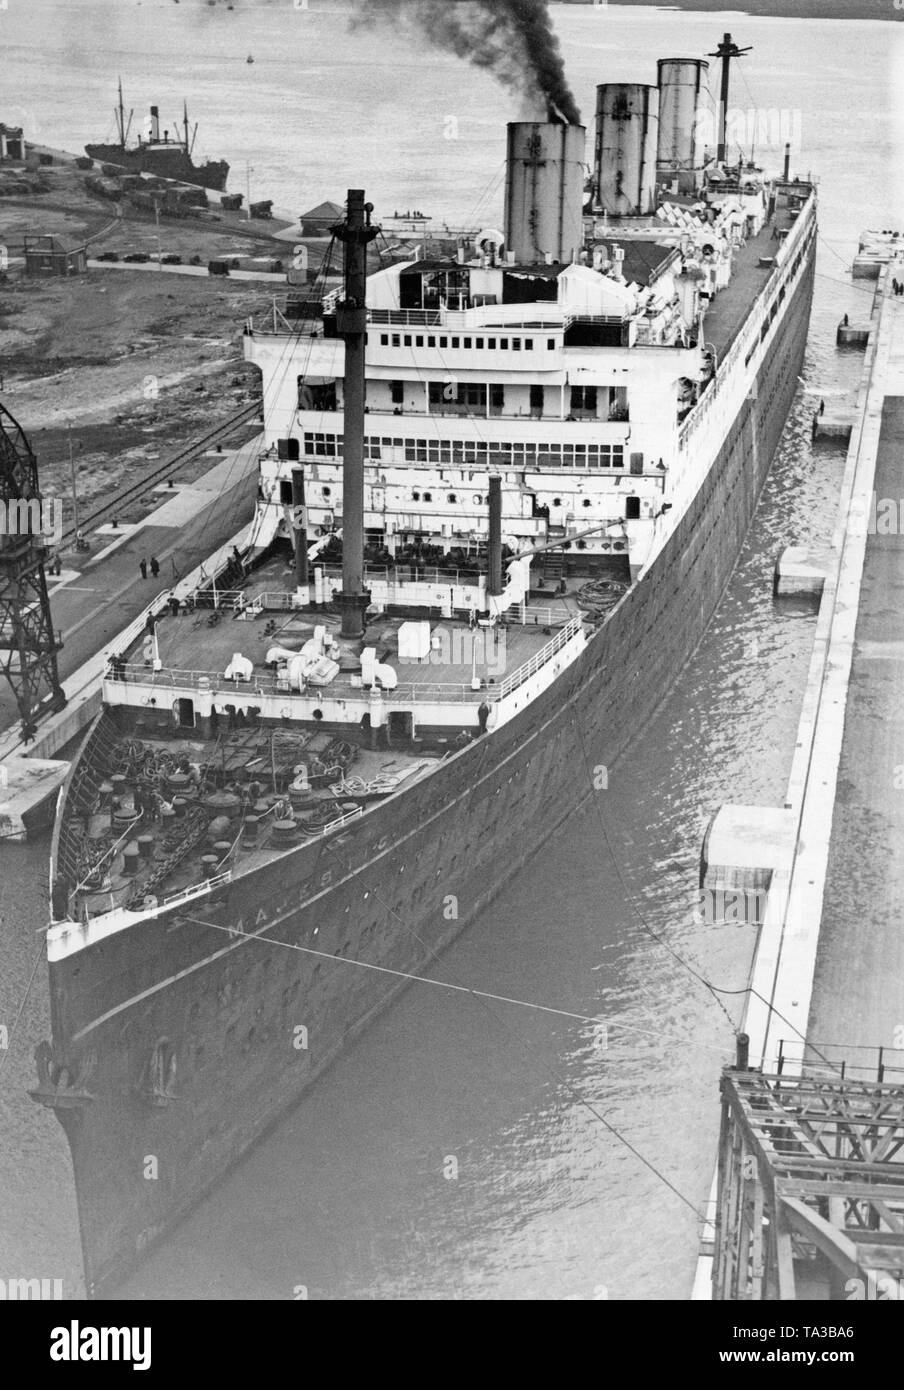 Le paquebot 'Majestic' en cale sèche à Southampton lors de la conversion à la navire de formation 'Caledonia'. Pour le déplacement du navire à son nouveau port d'attache Rosyth mâts et cheminées a dû être raccourcie afin que les ponts pourraient passer sur le Firth of Forth. Banque D'Images